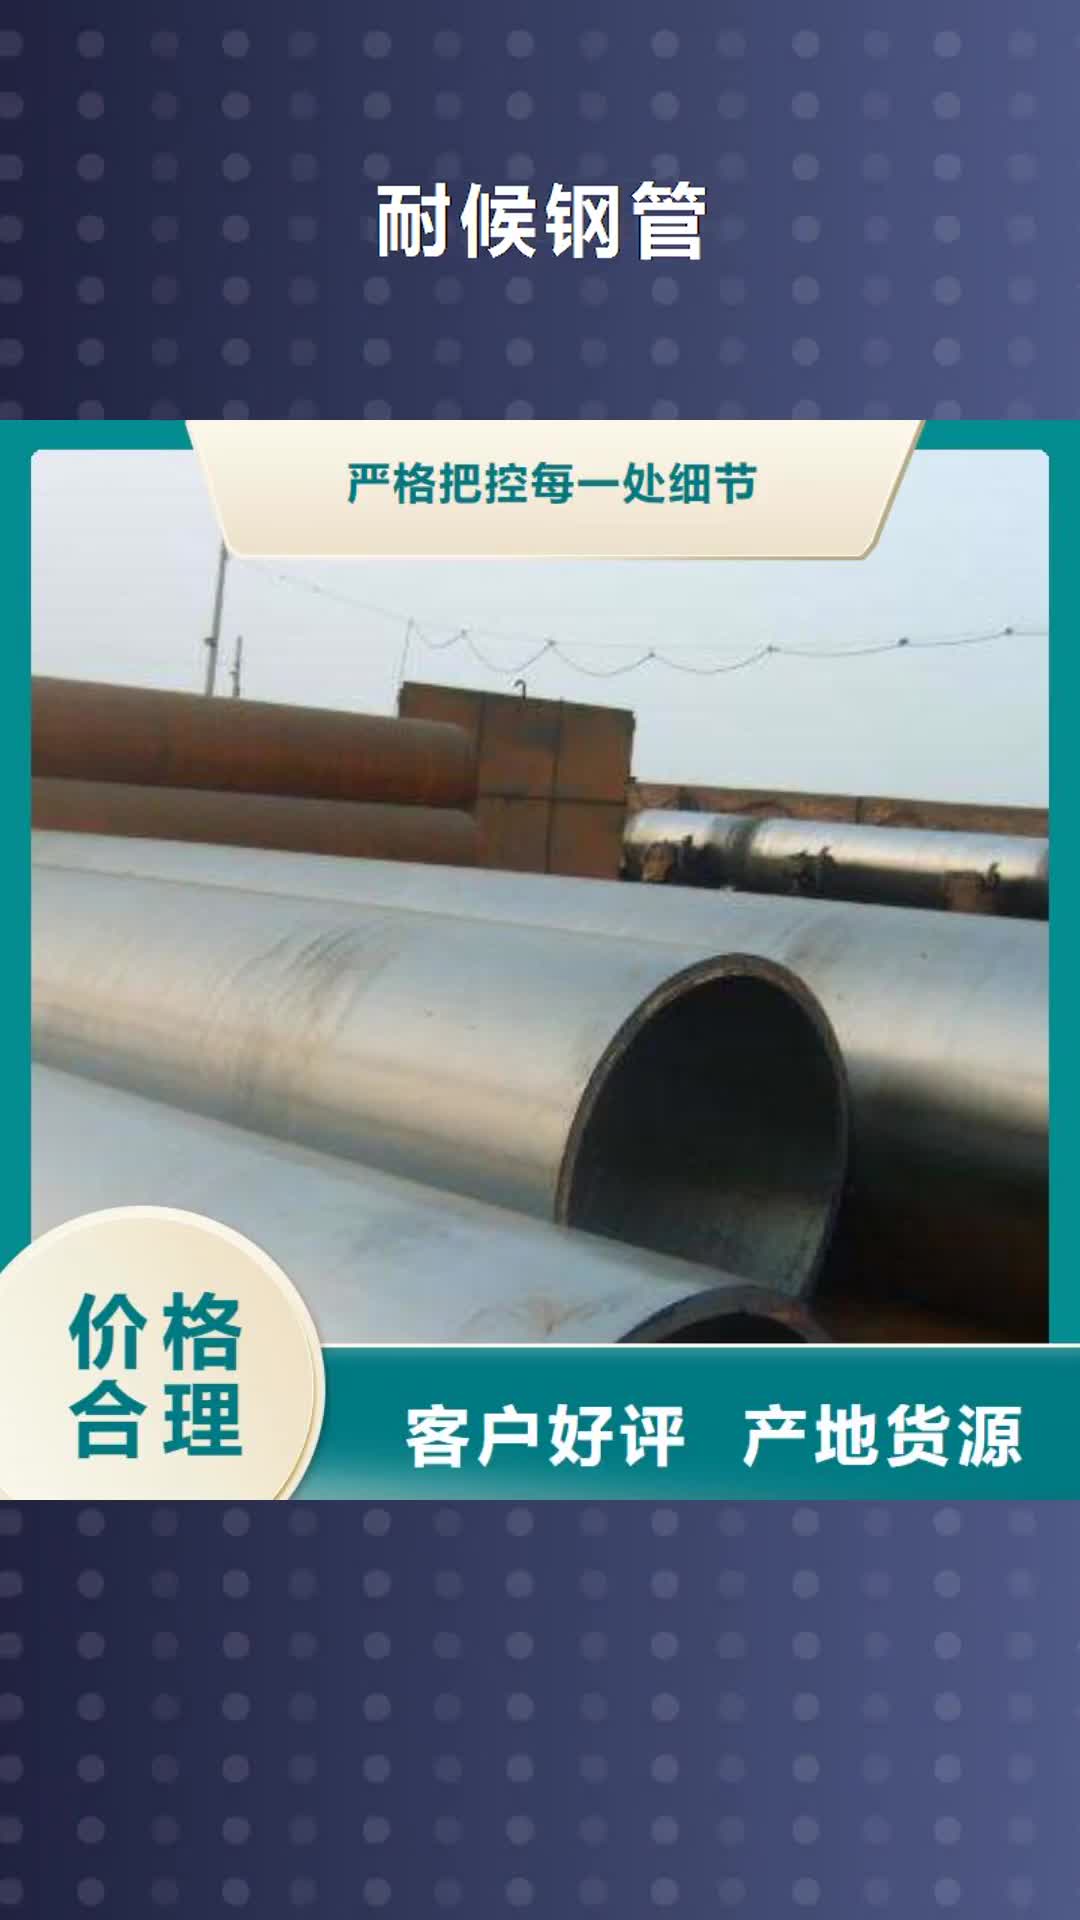 衢州【耐候钢管】,合金板联系厂家